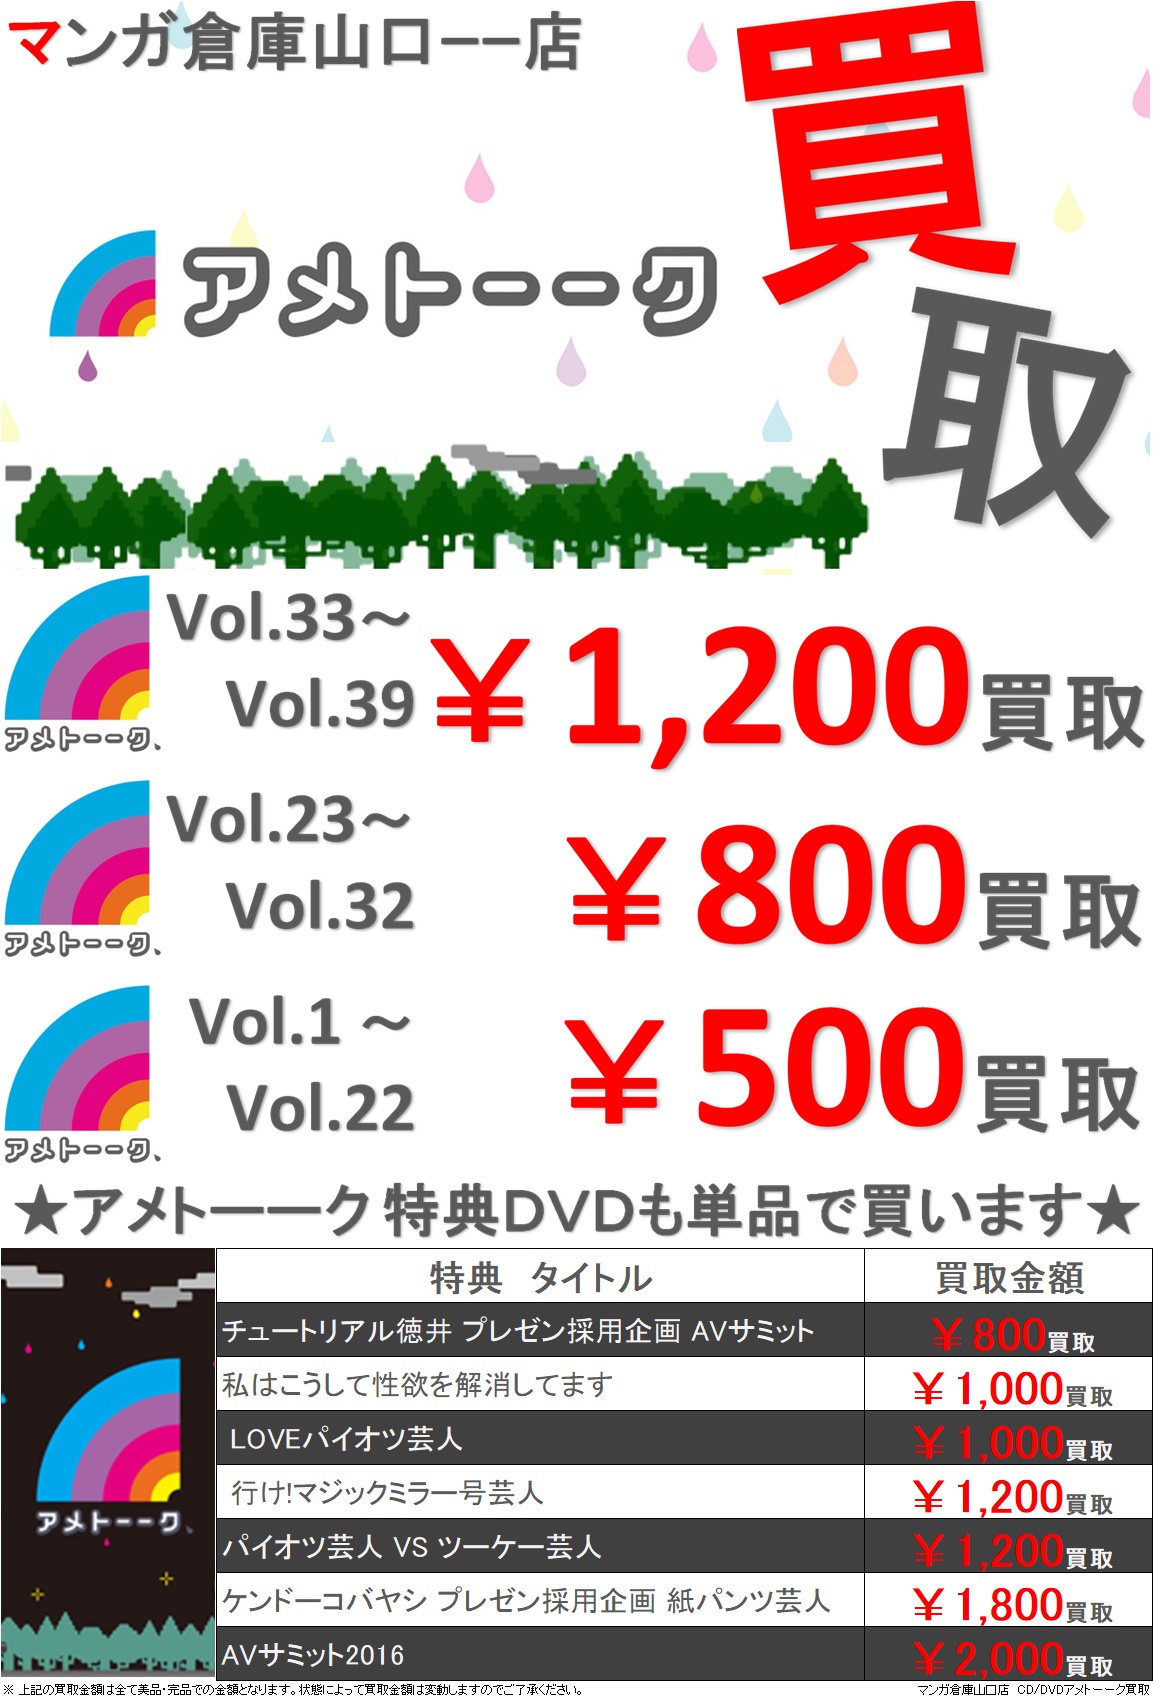 アメトーーク 特典DVD チュートリアル徳井 プレゼン採用企画 AVサミット